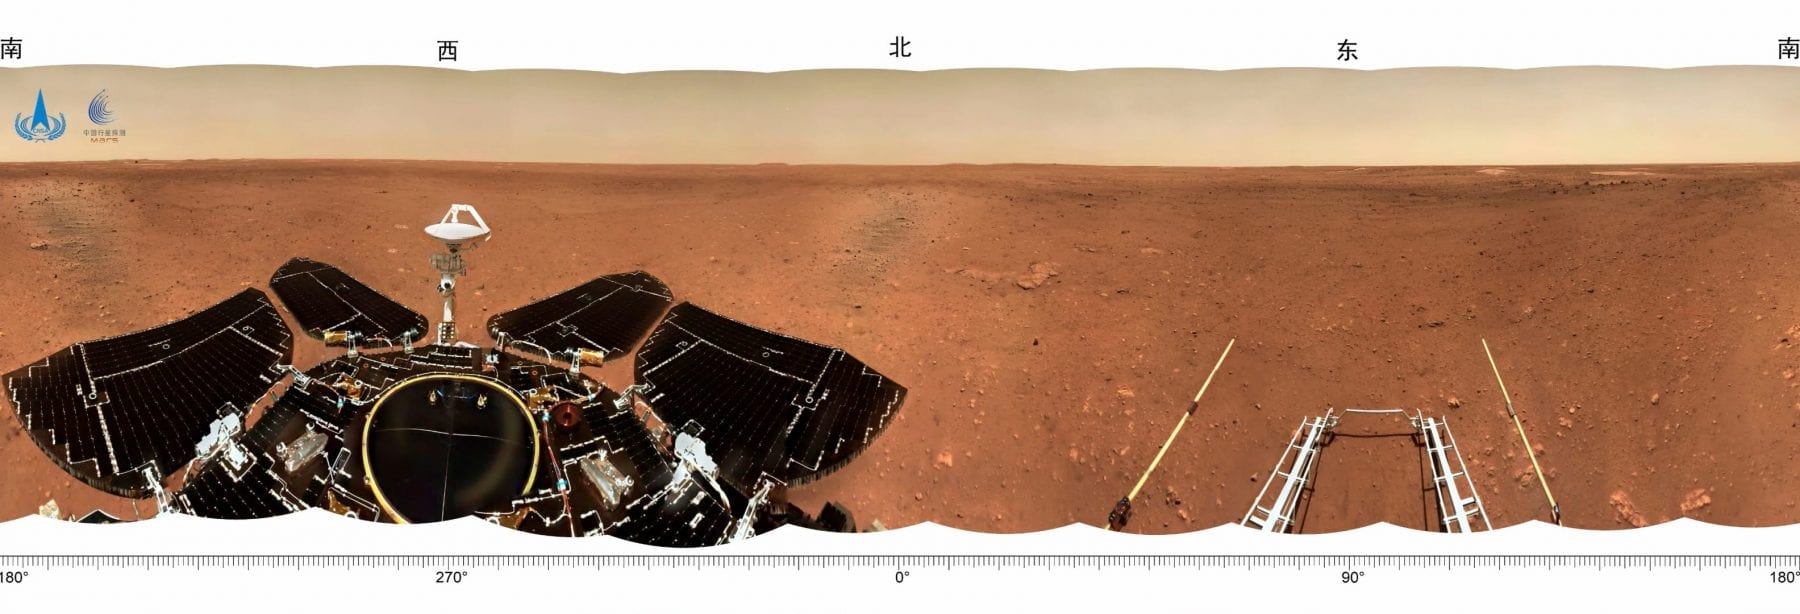 Еще одна увлекательная панорама с поверхности Марса, на которой показаны части китайского марсохода Zhurong, а также посадочная платформа. Предоставлено: CNSA.